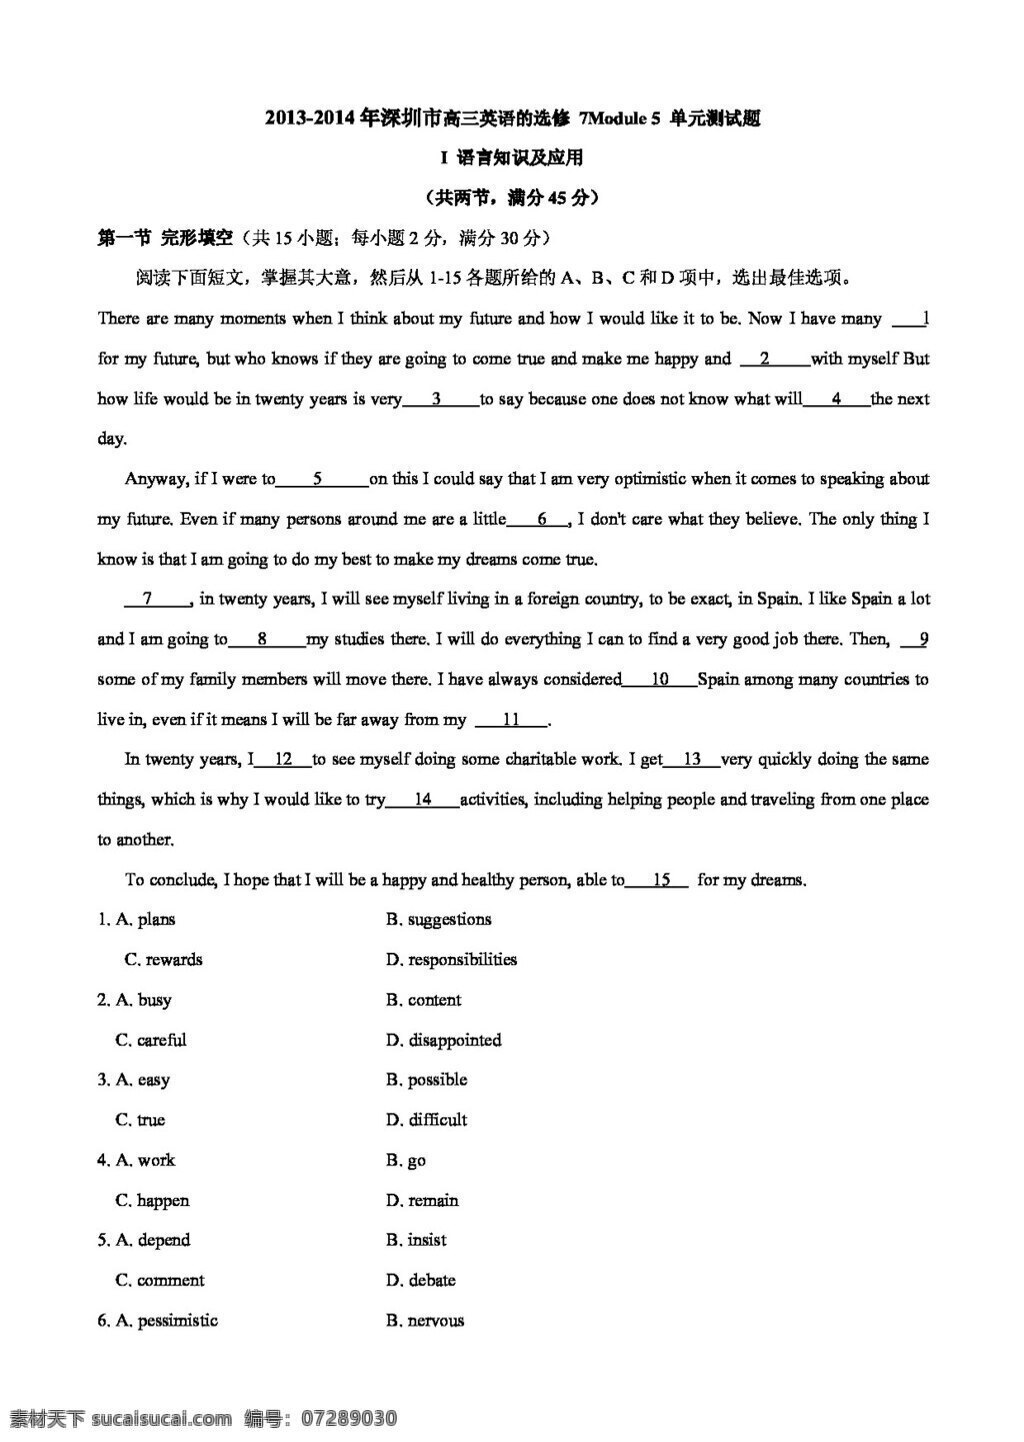 英语 外 研 版 深圳市 高中英语 选修 七 module ethnic culture 单元 综合 测试题 试卷 外研版